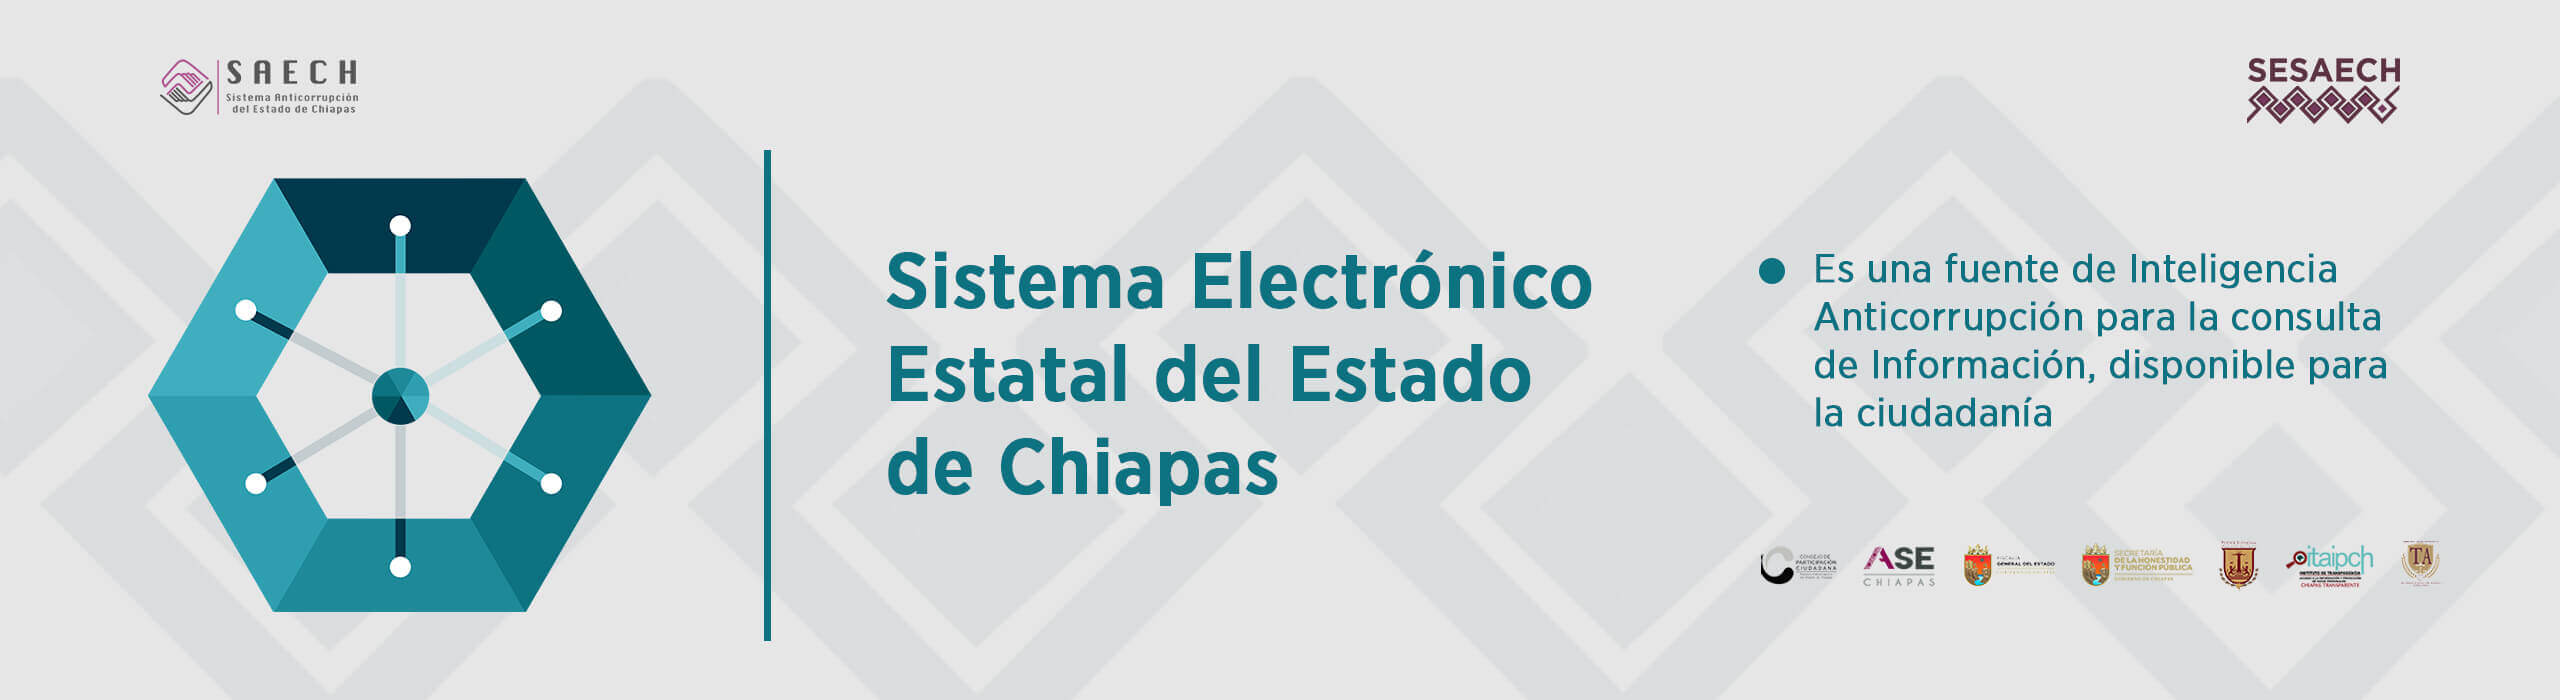 Sistema Electrónico Estatal de Chiapas